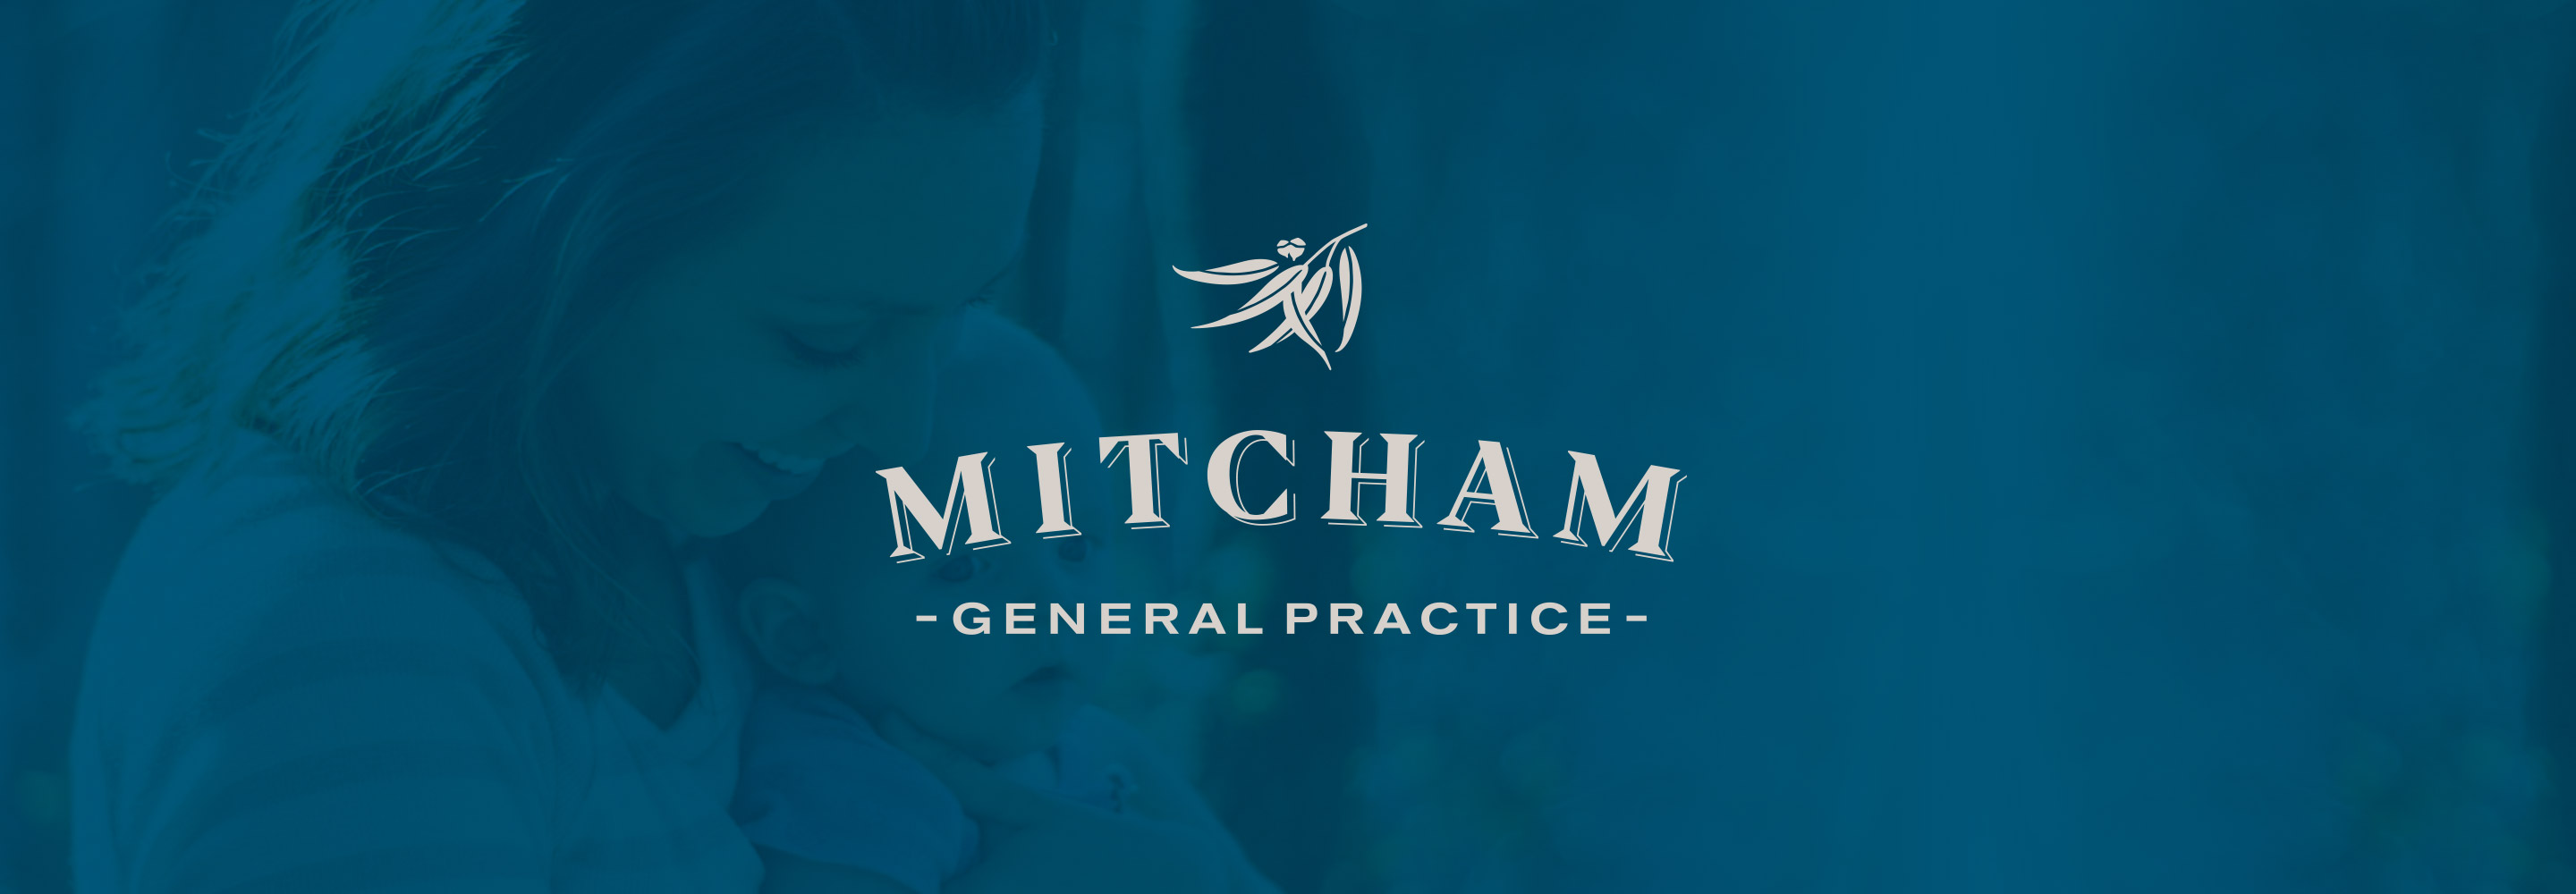 Mitcham GP logo banner created by Quisk Design.